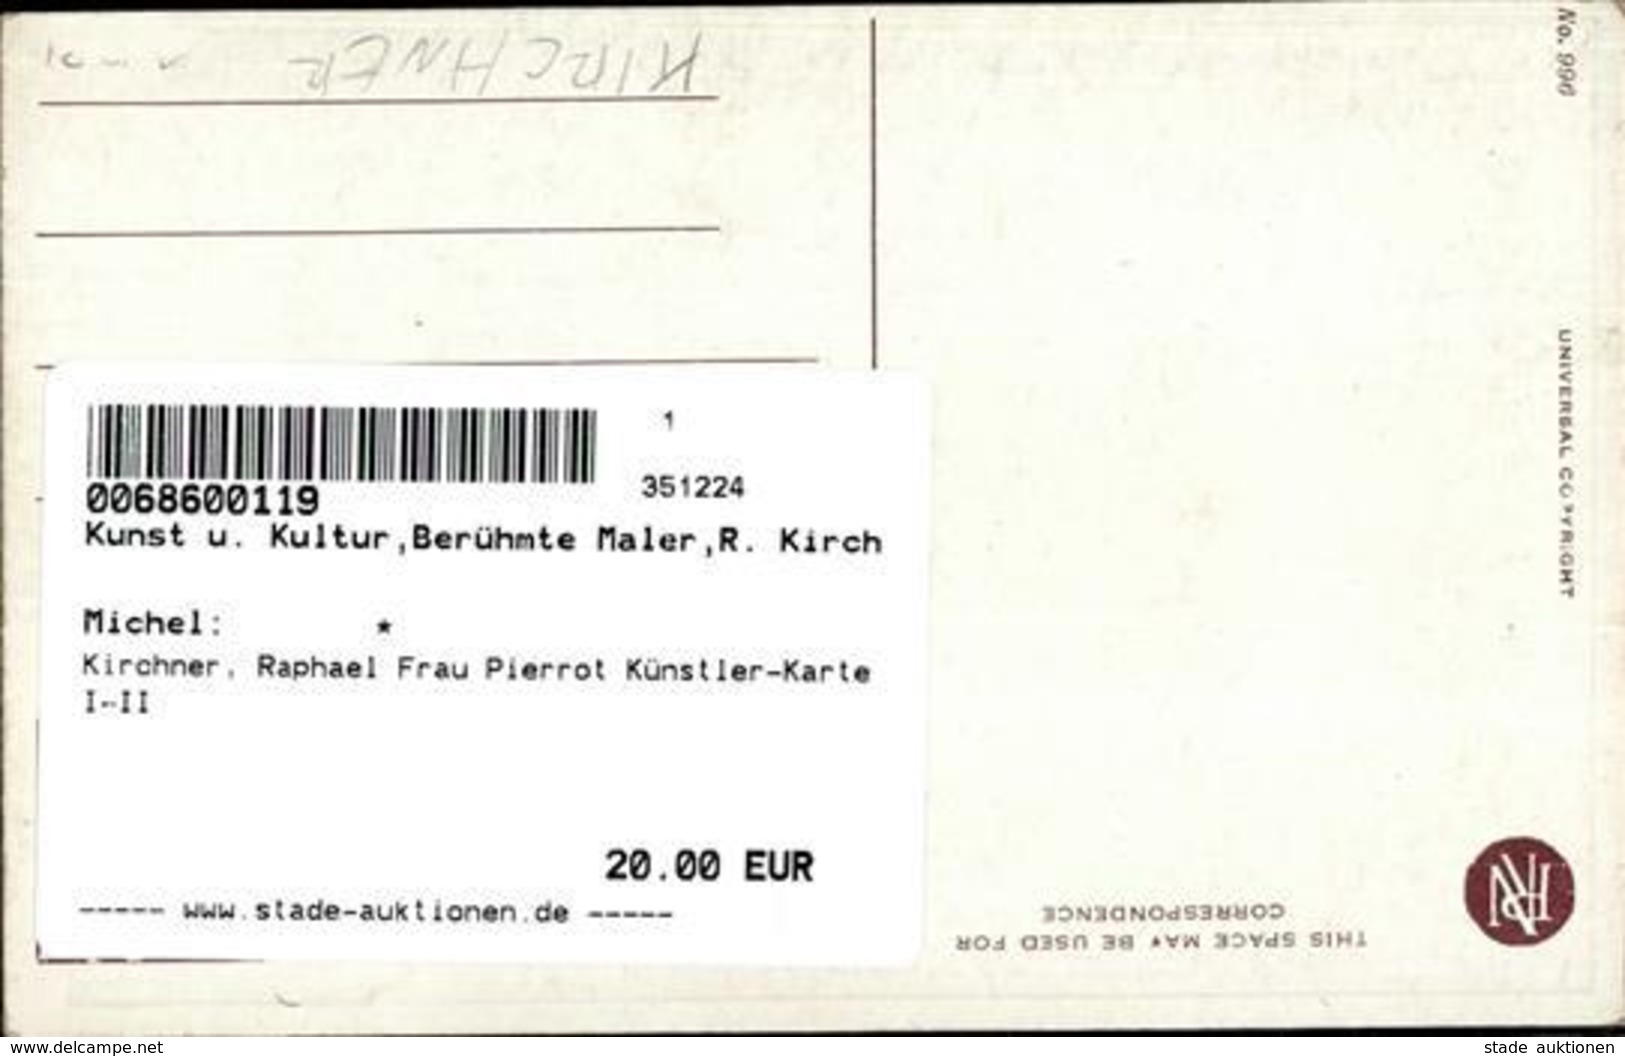 Kirchner, Raphael Frau Pierrot Künstler-Karte I-II - Kirchner, Raphael